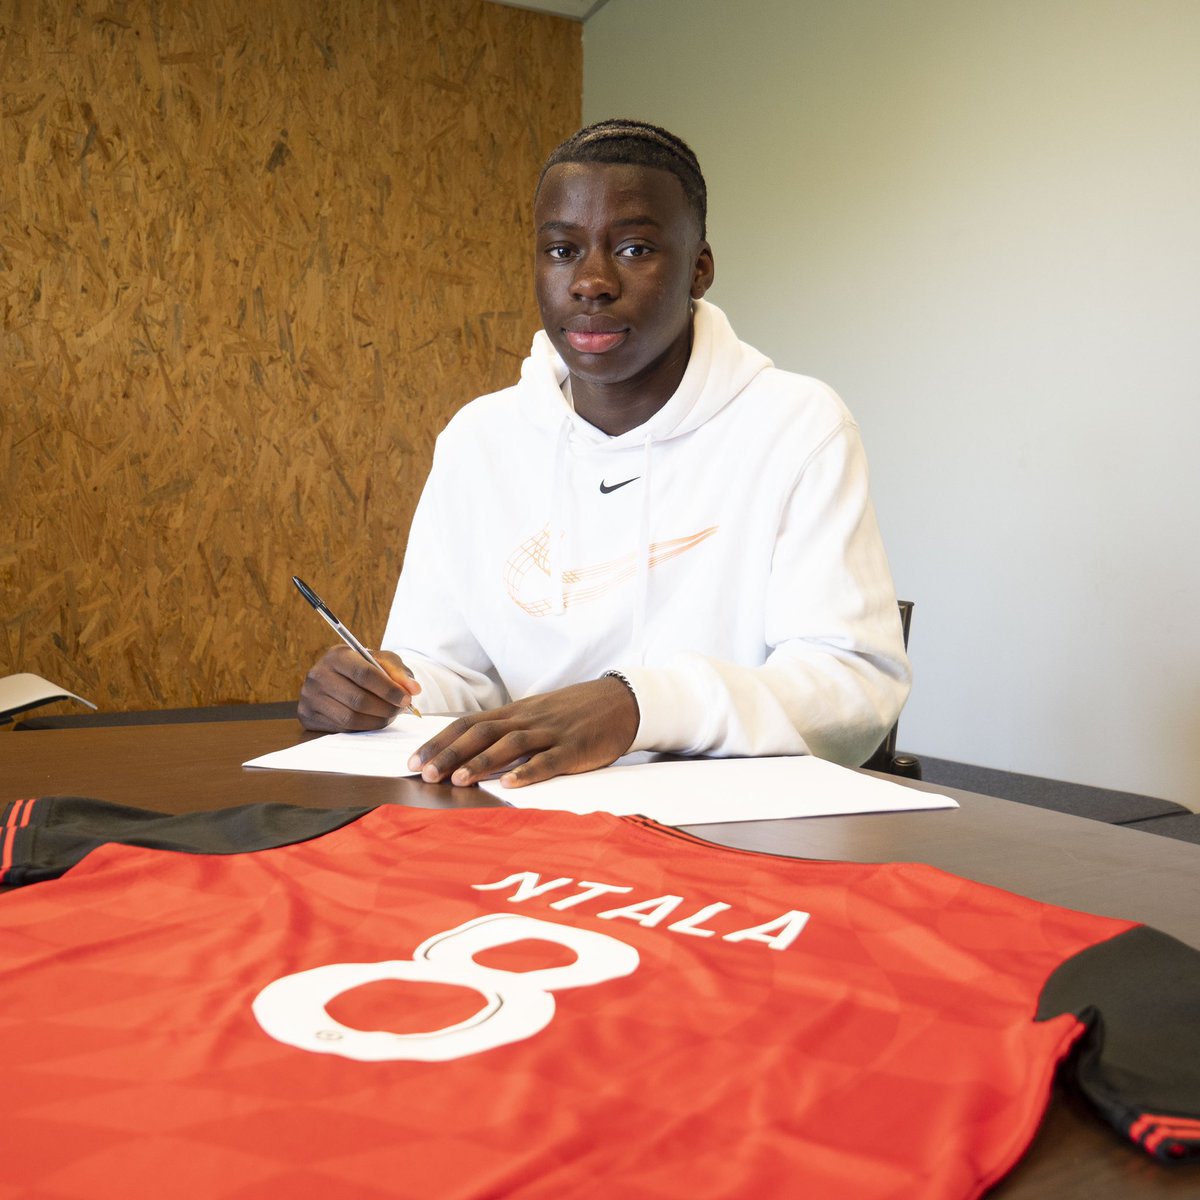 Très fière de vous annoncer la signature de Josué Ntala (2008) capitaine des U16 R3 cette saison a l’EA Guingamp pour 3 saison. Grigny c’est cool c’est class 🔵⚪️ 

Bonne route mon Capiiii 🫶🏾❤️